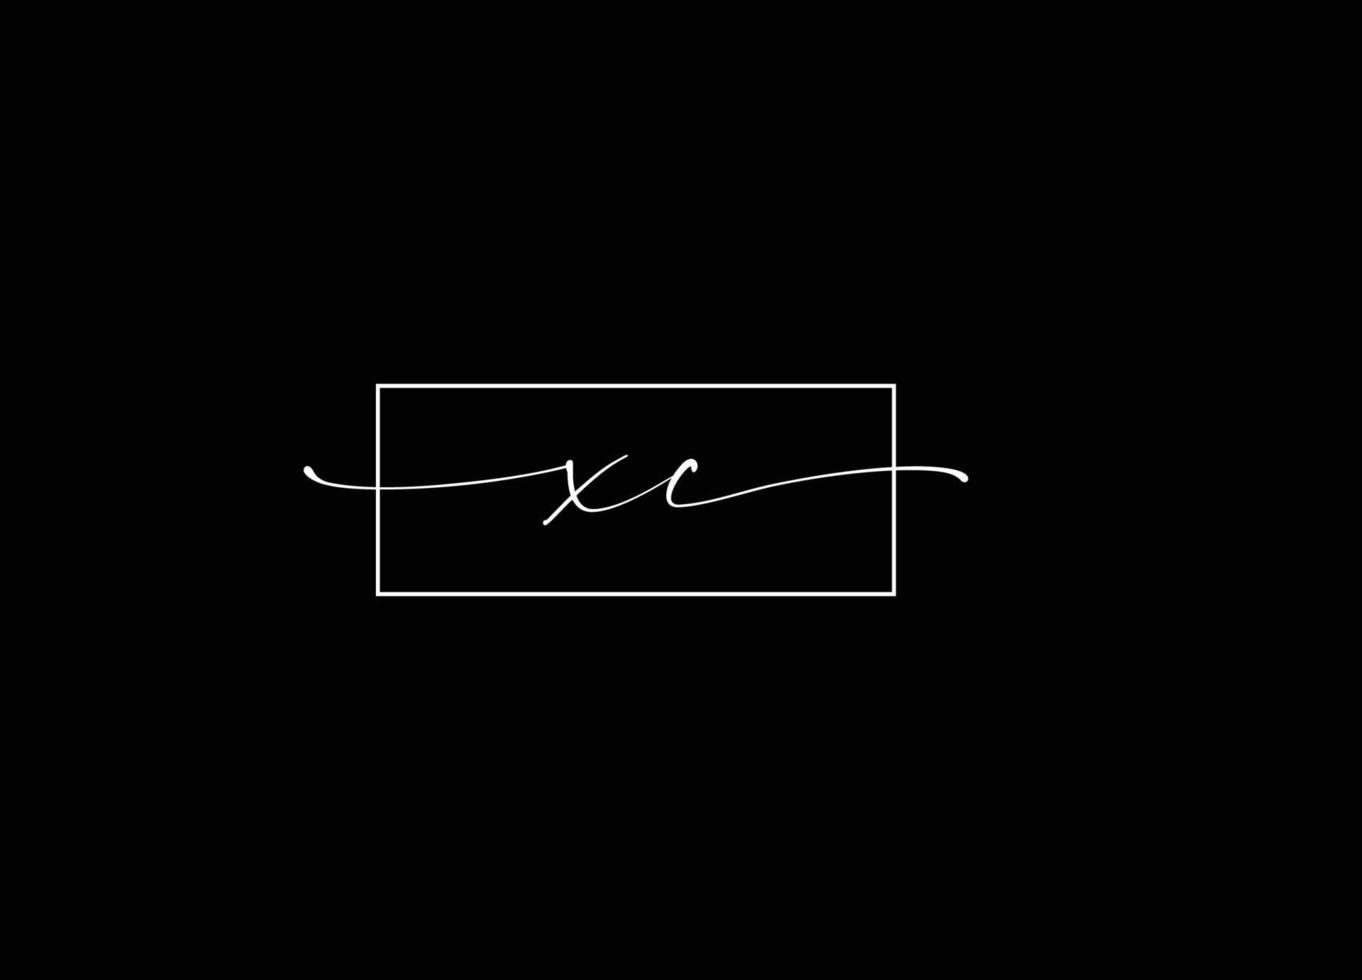 XC logo Design and Company logo vector